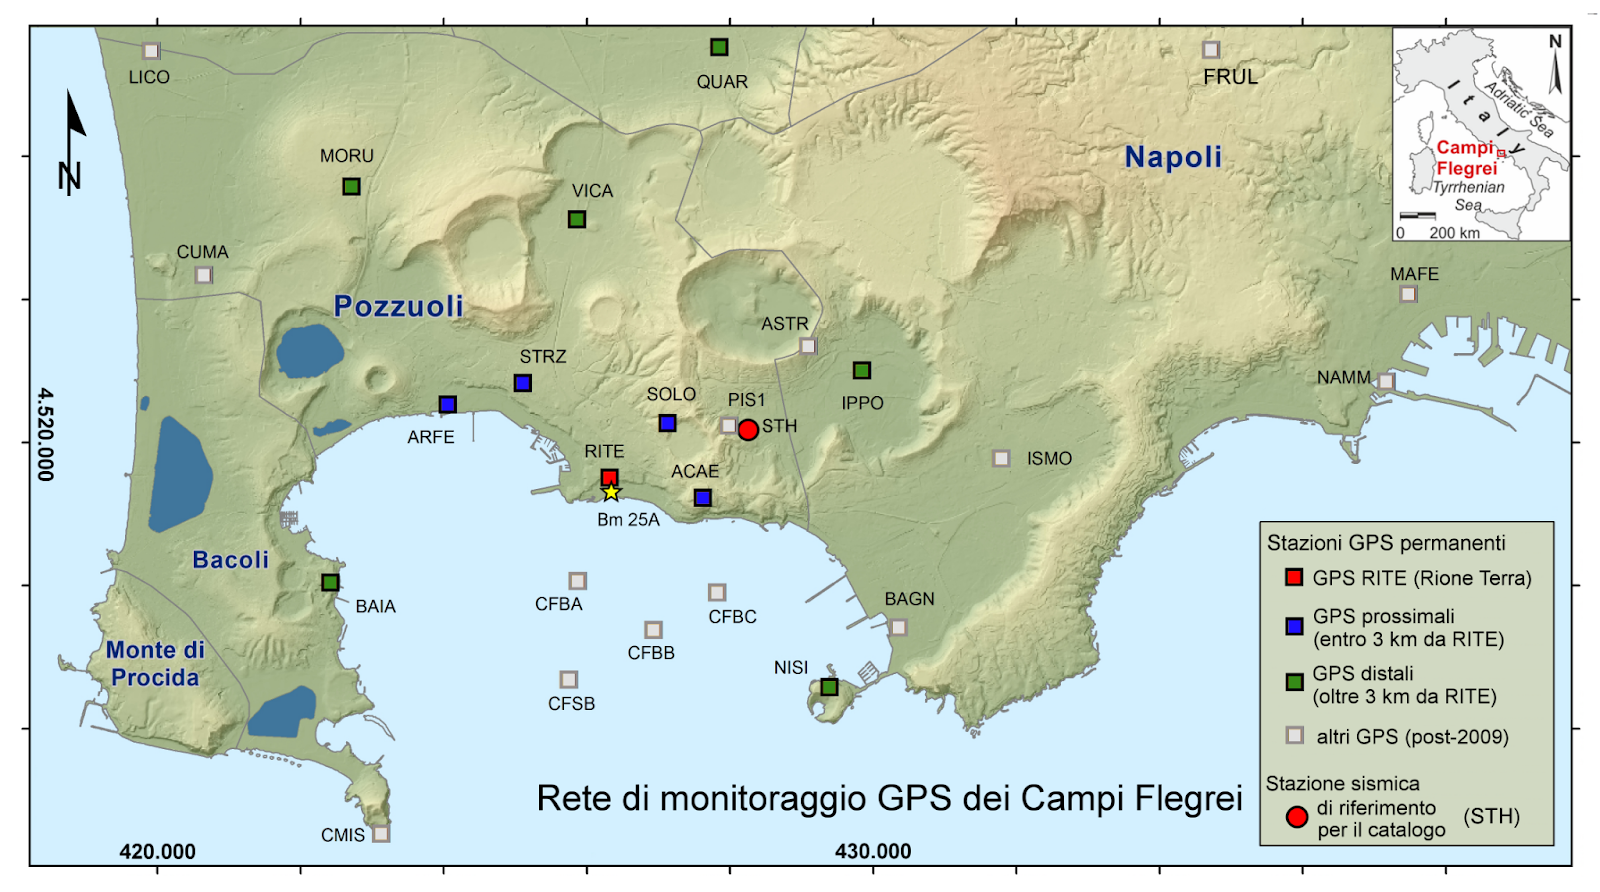 CAMPI FLEGREI | Analizzati gli andamenti del sollevamento del suolo e della sismicità nel periodo 2000-2020